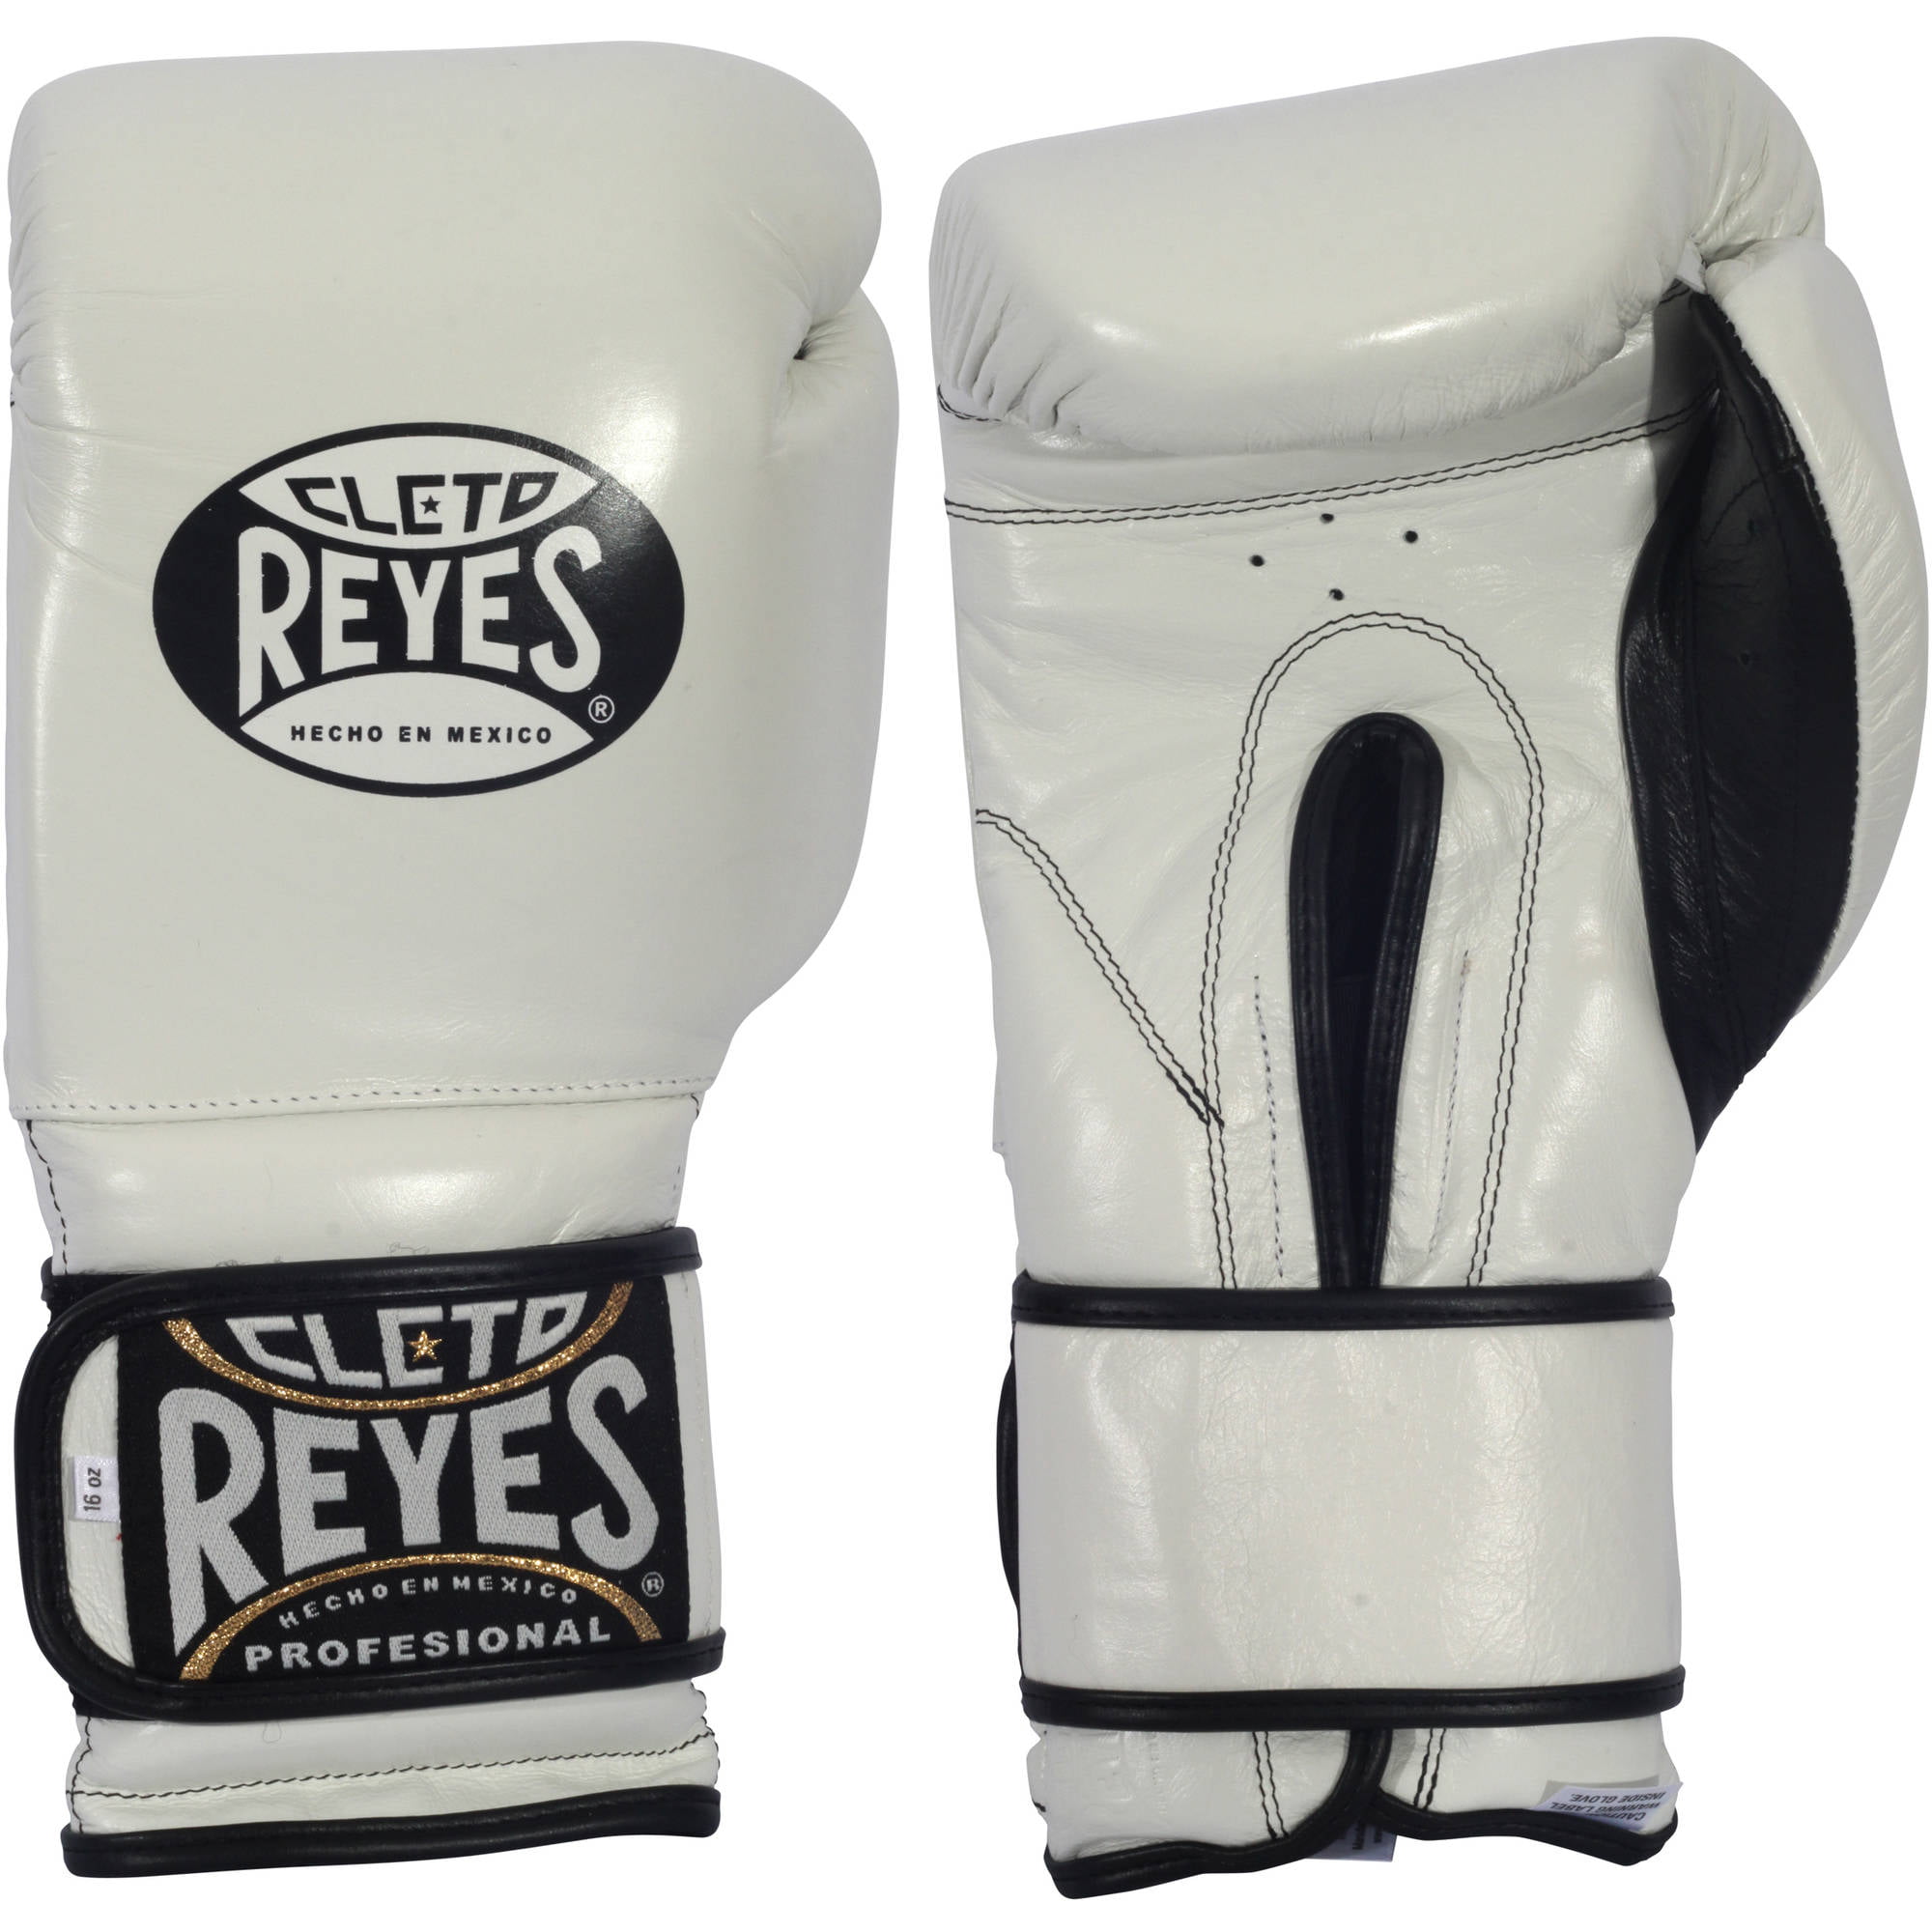 cleto reyes boxing gloves 16 oz 